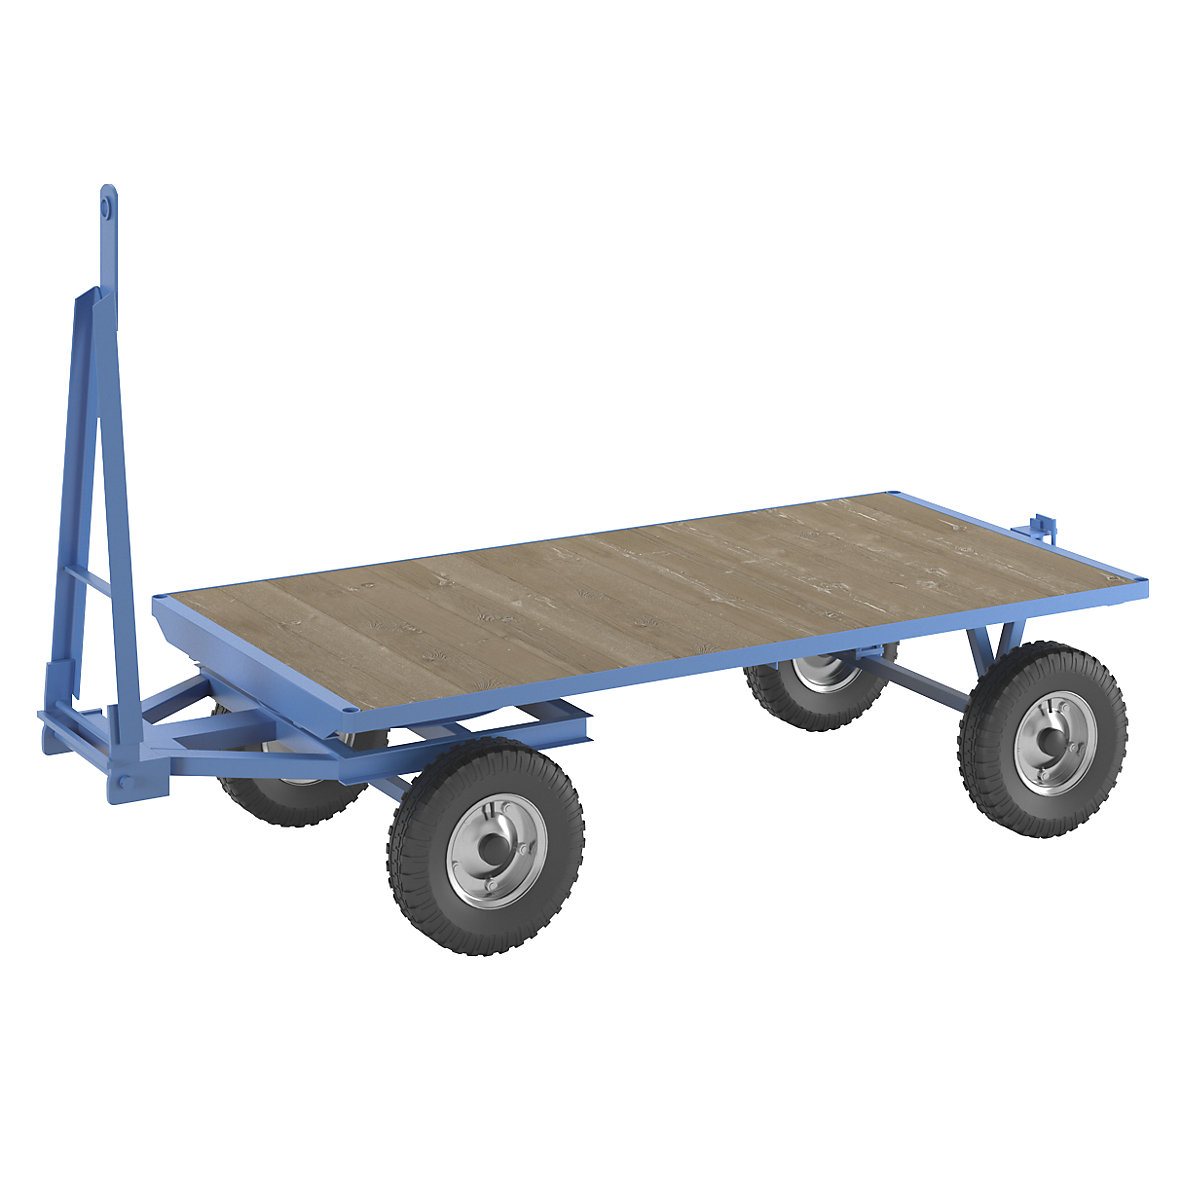 Rimorchio per trattori – eurokraft pro, sterzo a ralla, portata 3 t, superficie di carico 2 x 1 m, blu chiaro-1